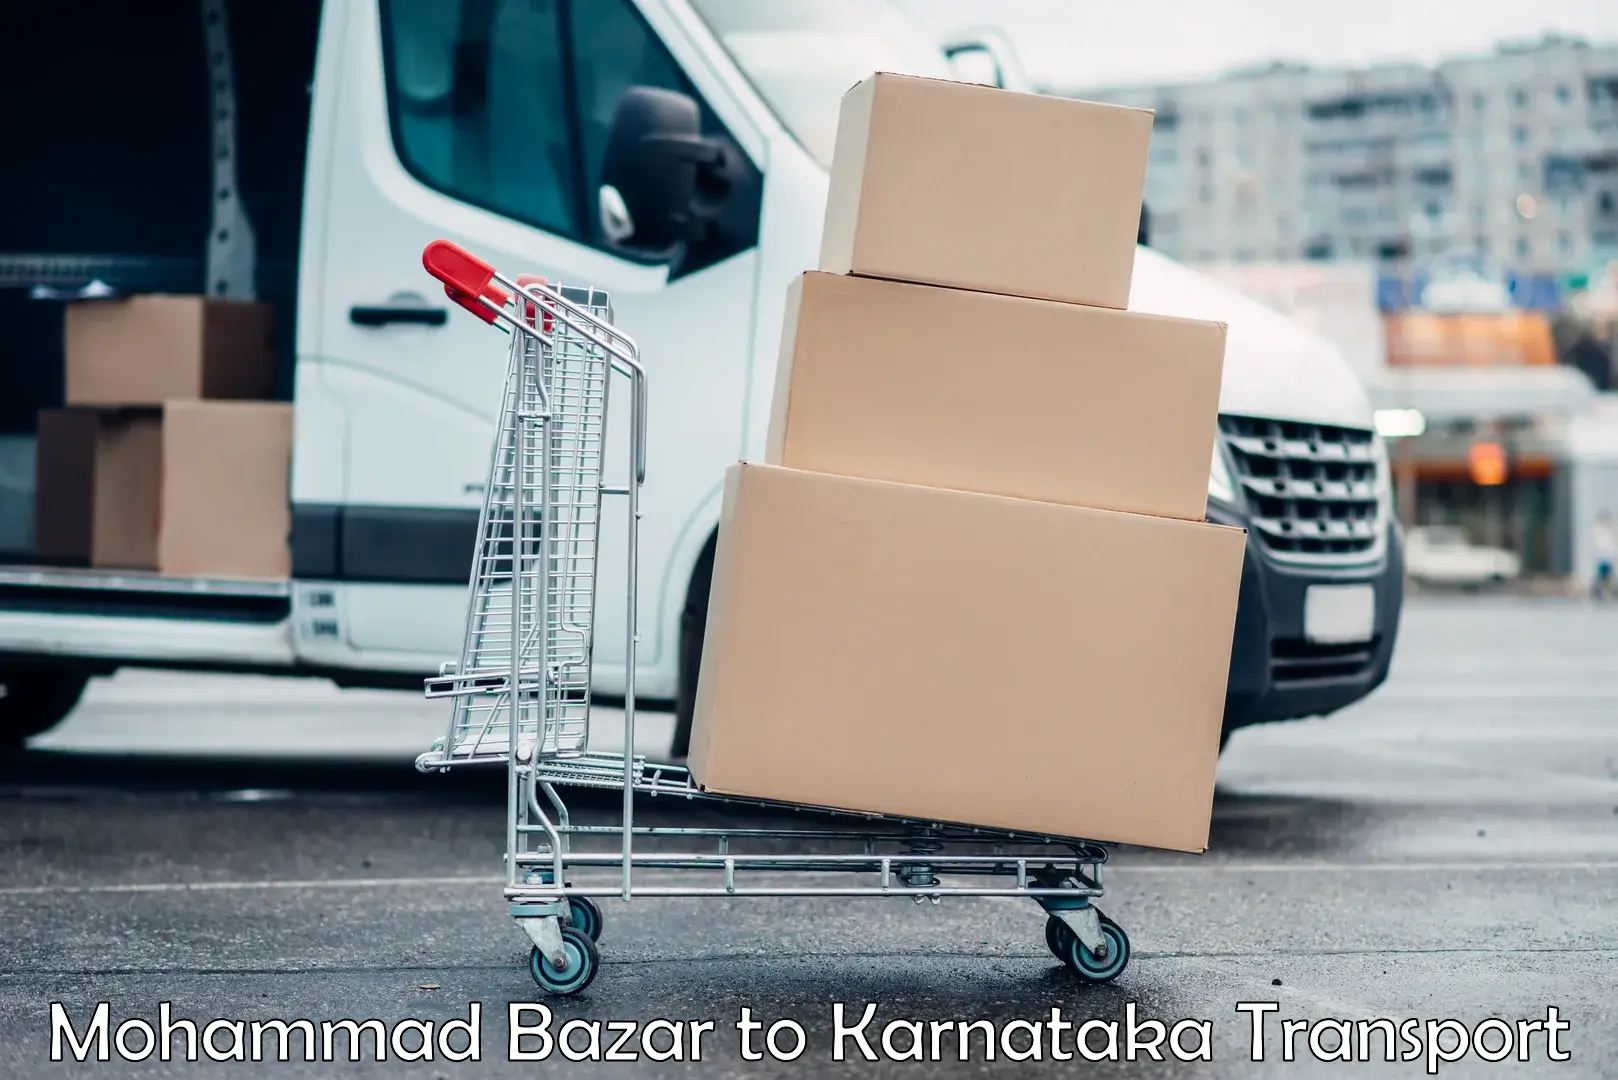 Goods delivery service Mohammad Bazar to Kanakapura